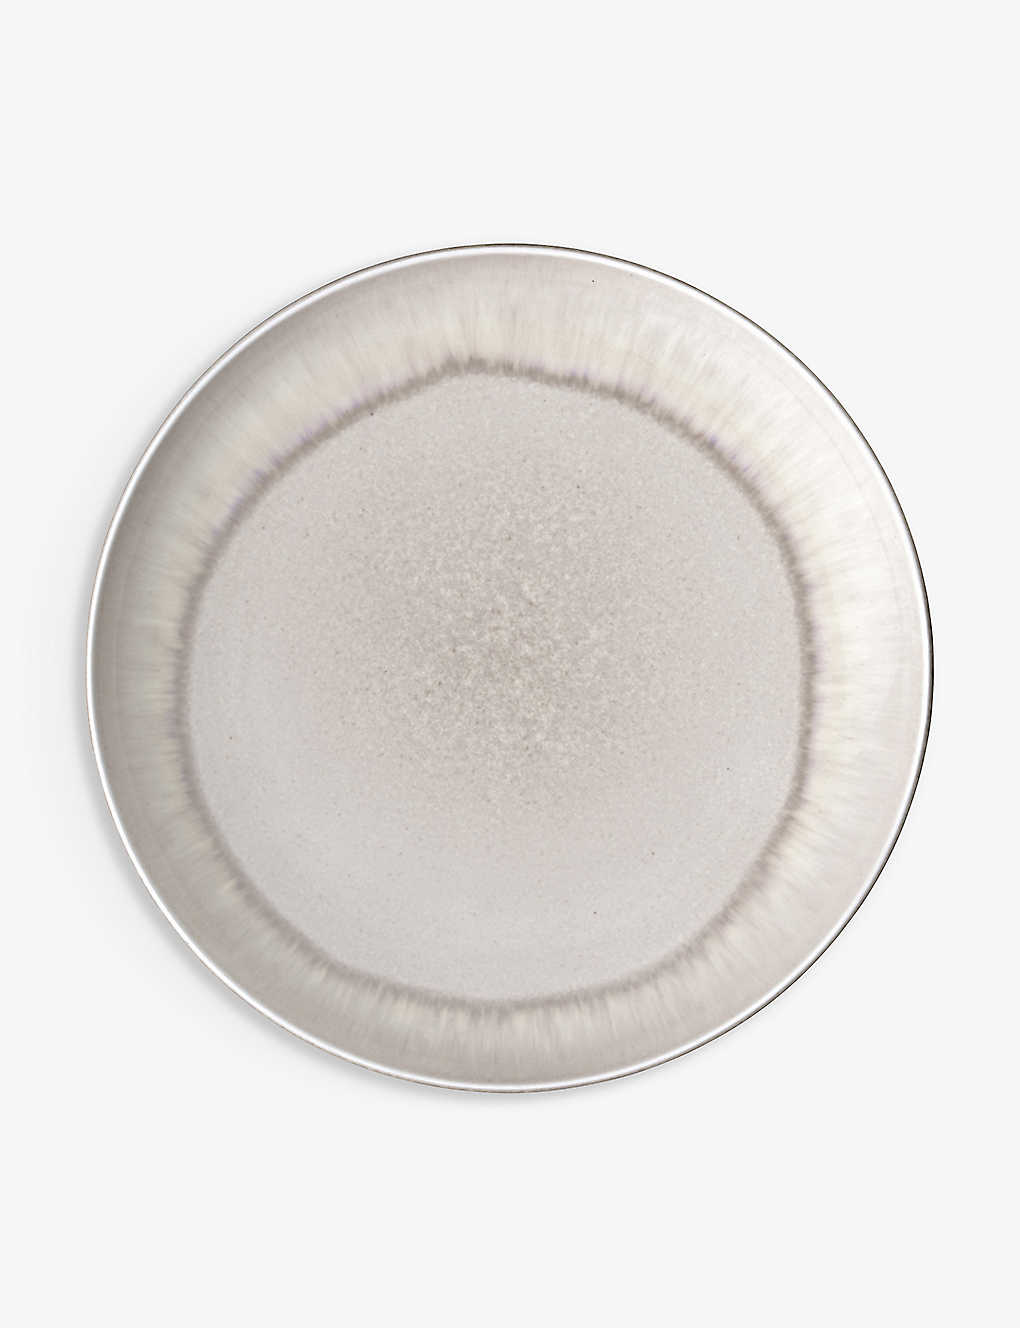 Villeroy & Boch Perlemor Glazed Porcelain Salad Plate 24cm